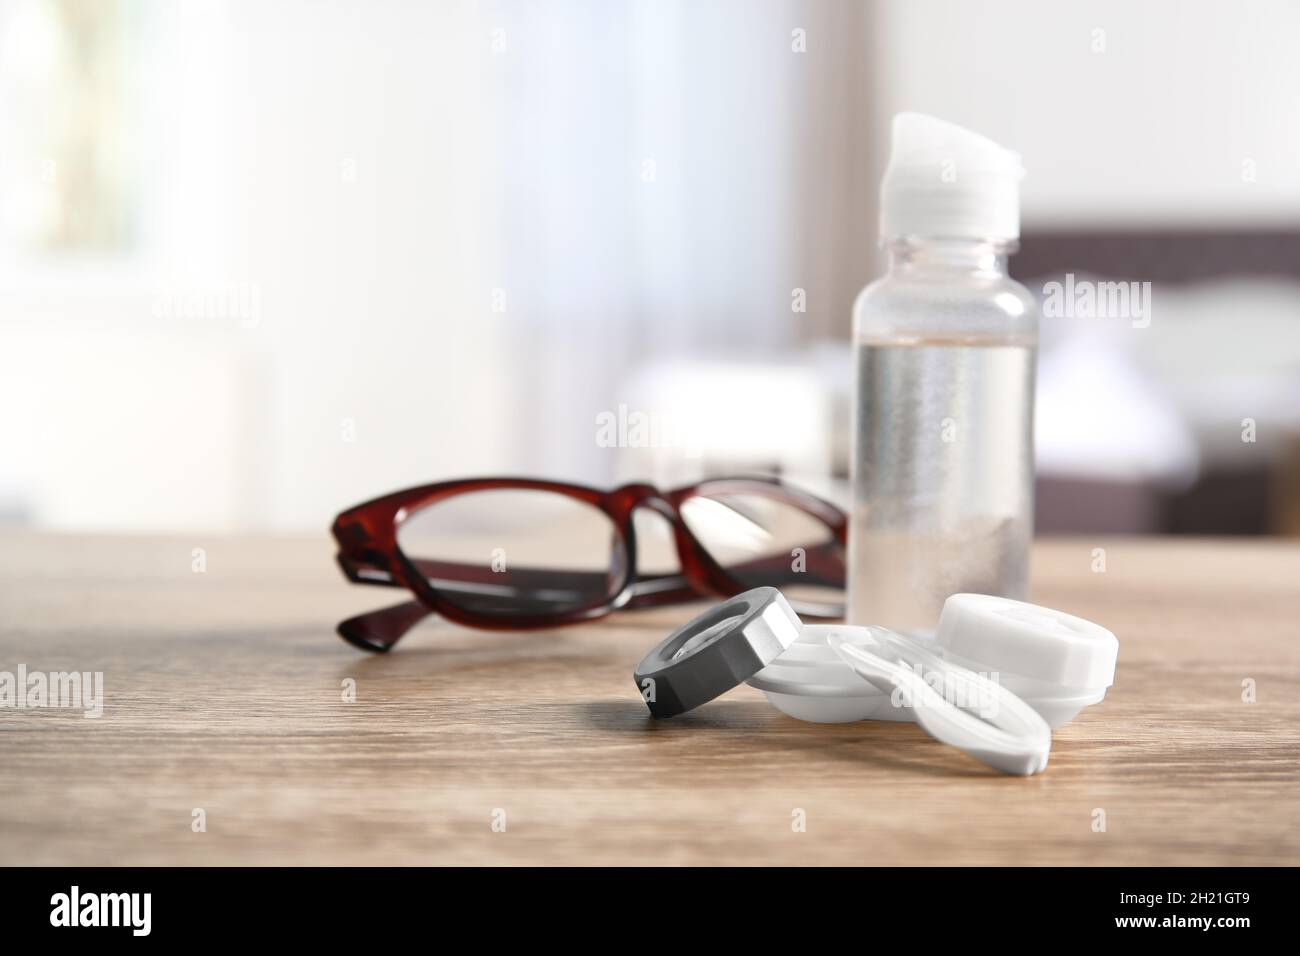 Funda para lentes de contacto, pinzas, botella de solución y gafas sobre la mesa Fotografía de Alamy